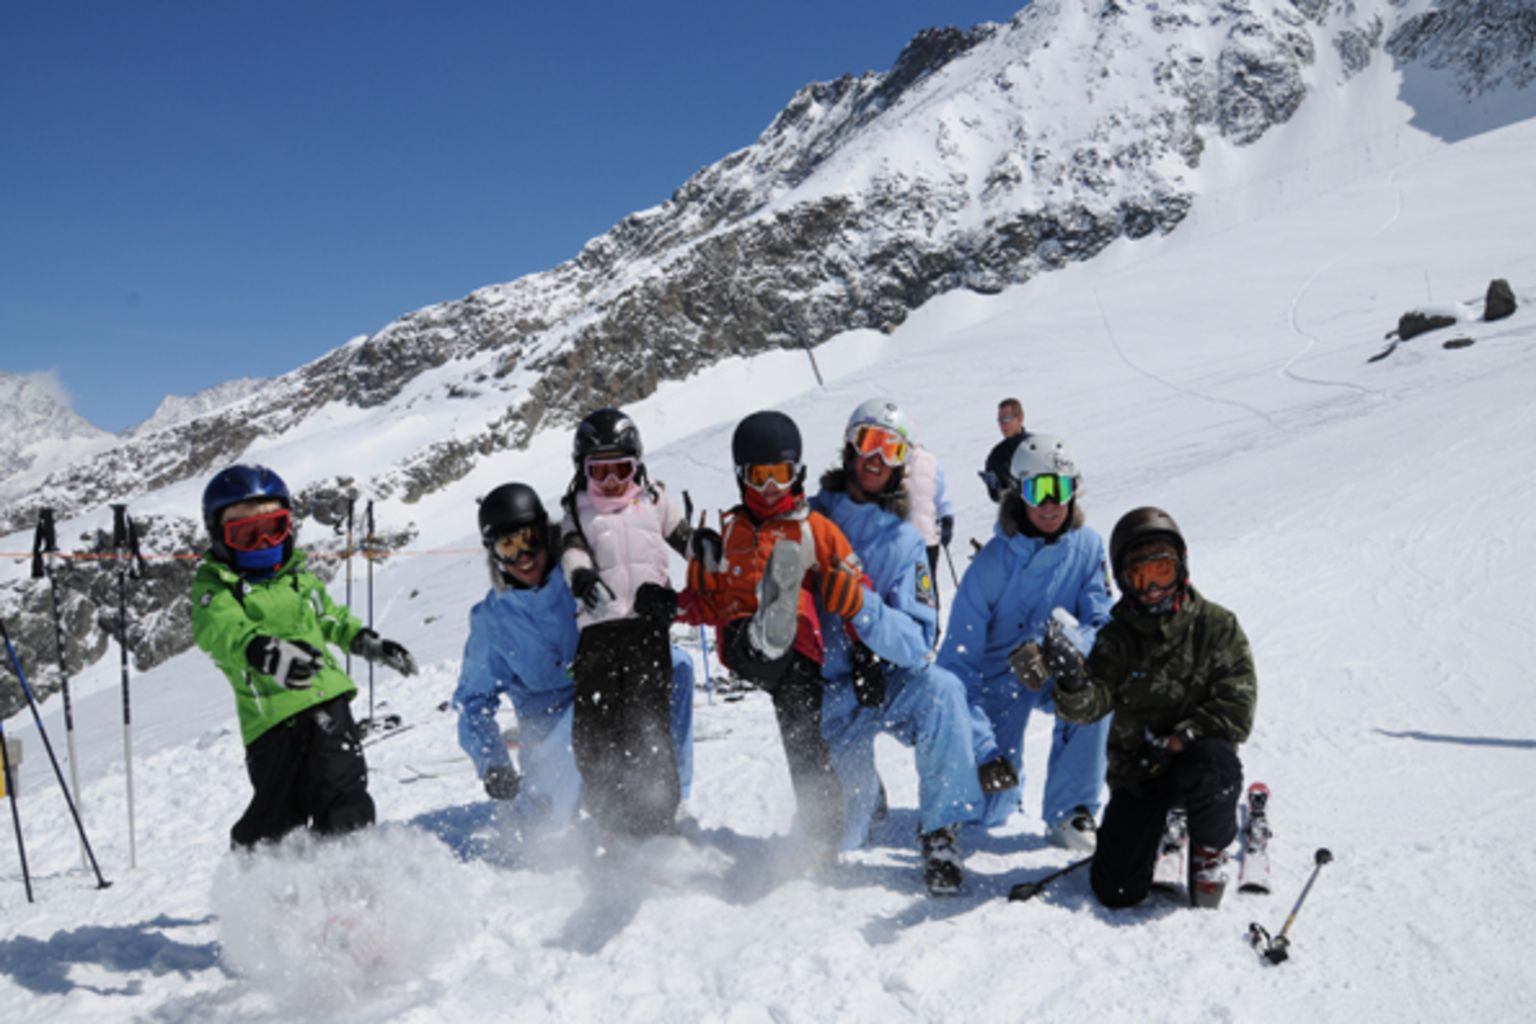 ESKIMOS n’est pas une école de ski et snowboard traditionnelle, mais un univers plein de possibilités créatives pour les vacanciers afin de passer des moments magiques à Saas-Fee, Valais